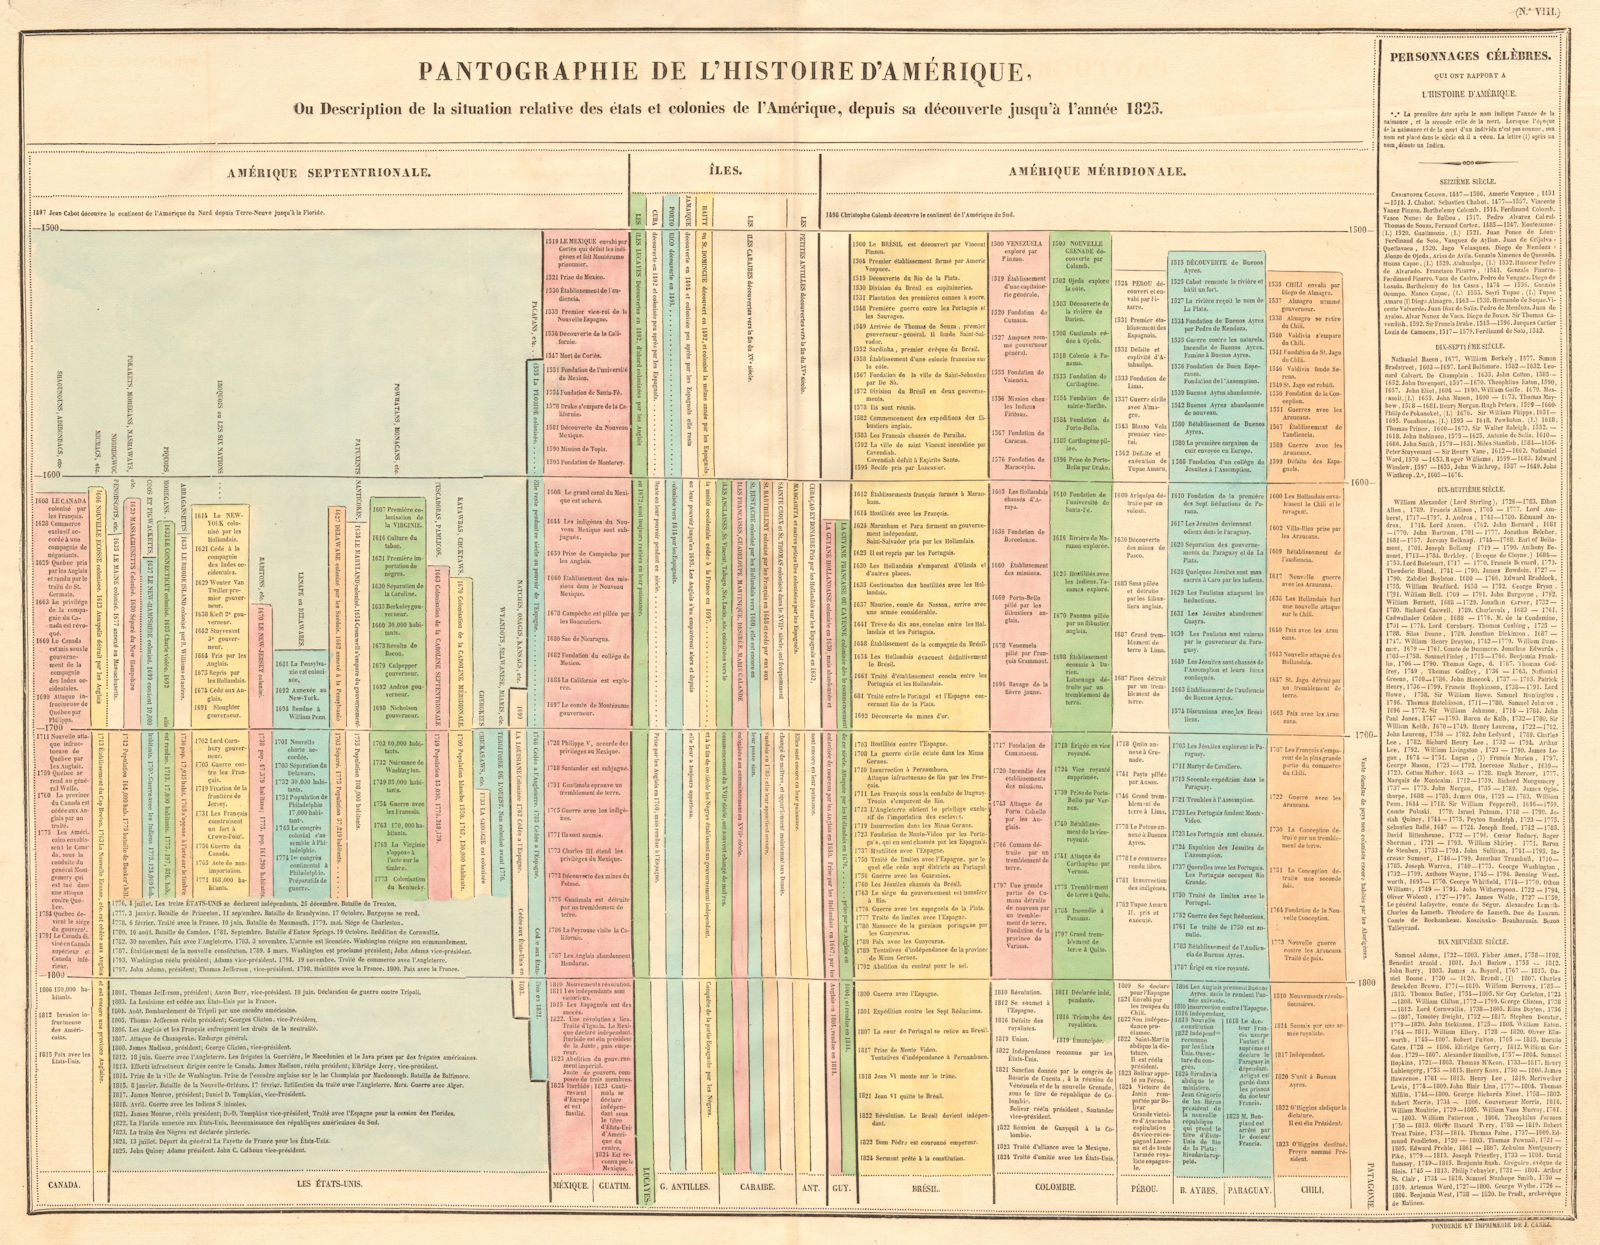 Pantographie de l'histoire d'Amérique. Americas historical timeline. BUCHON 1825